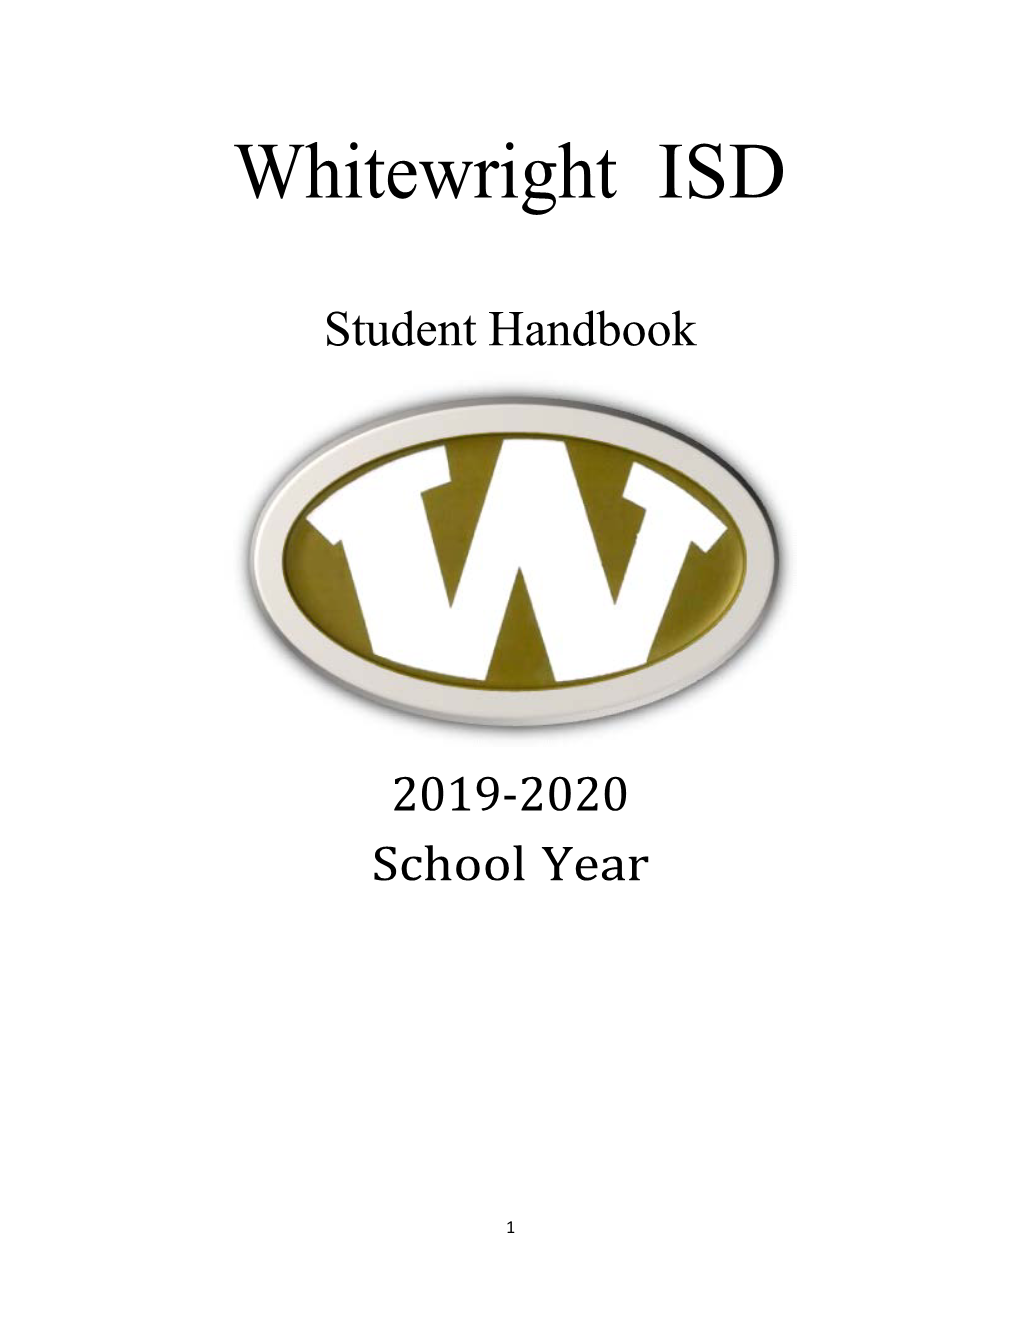 Whitewright ISD